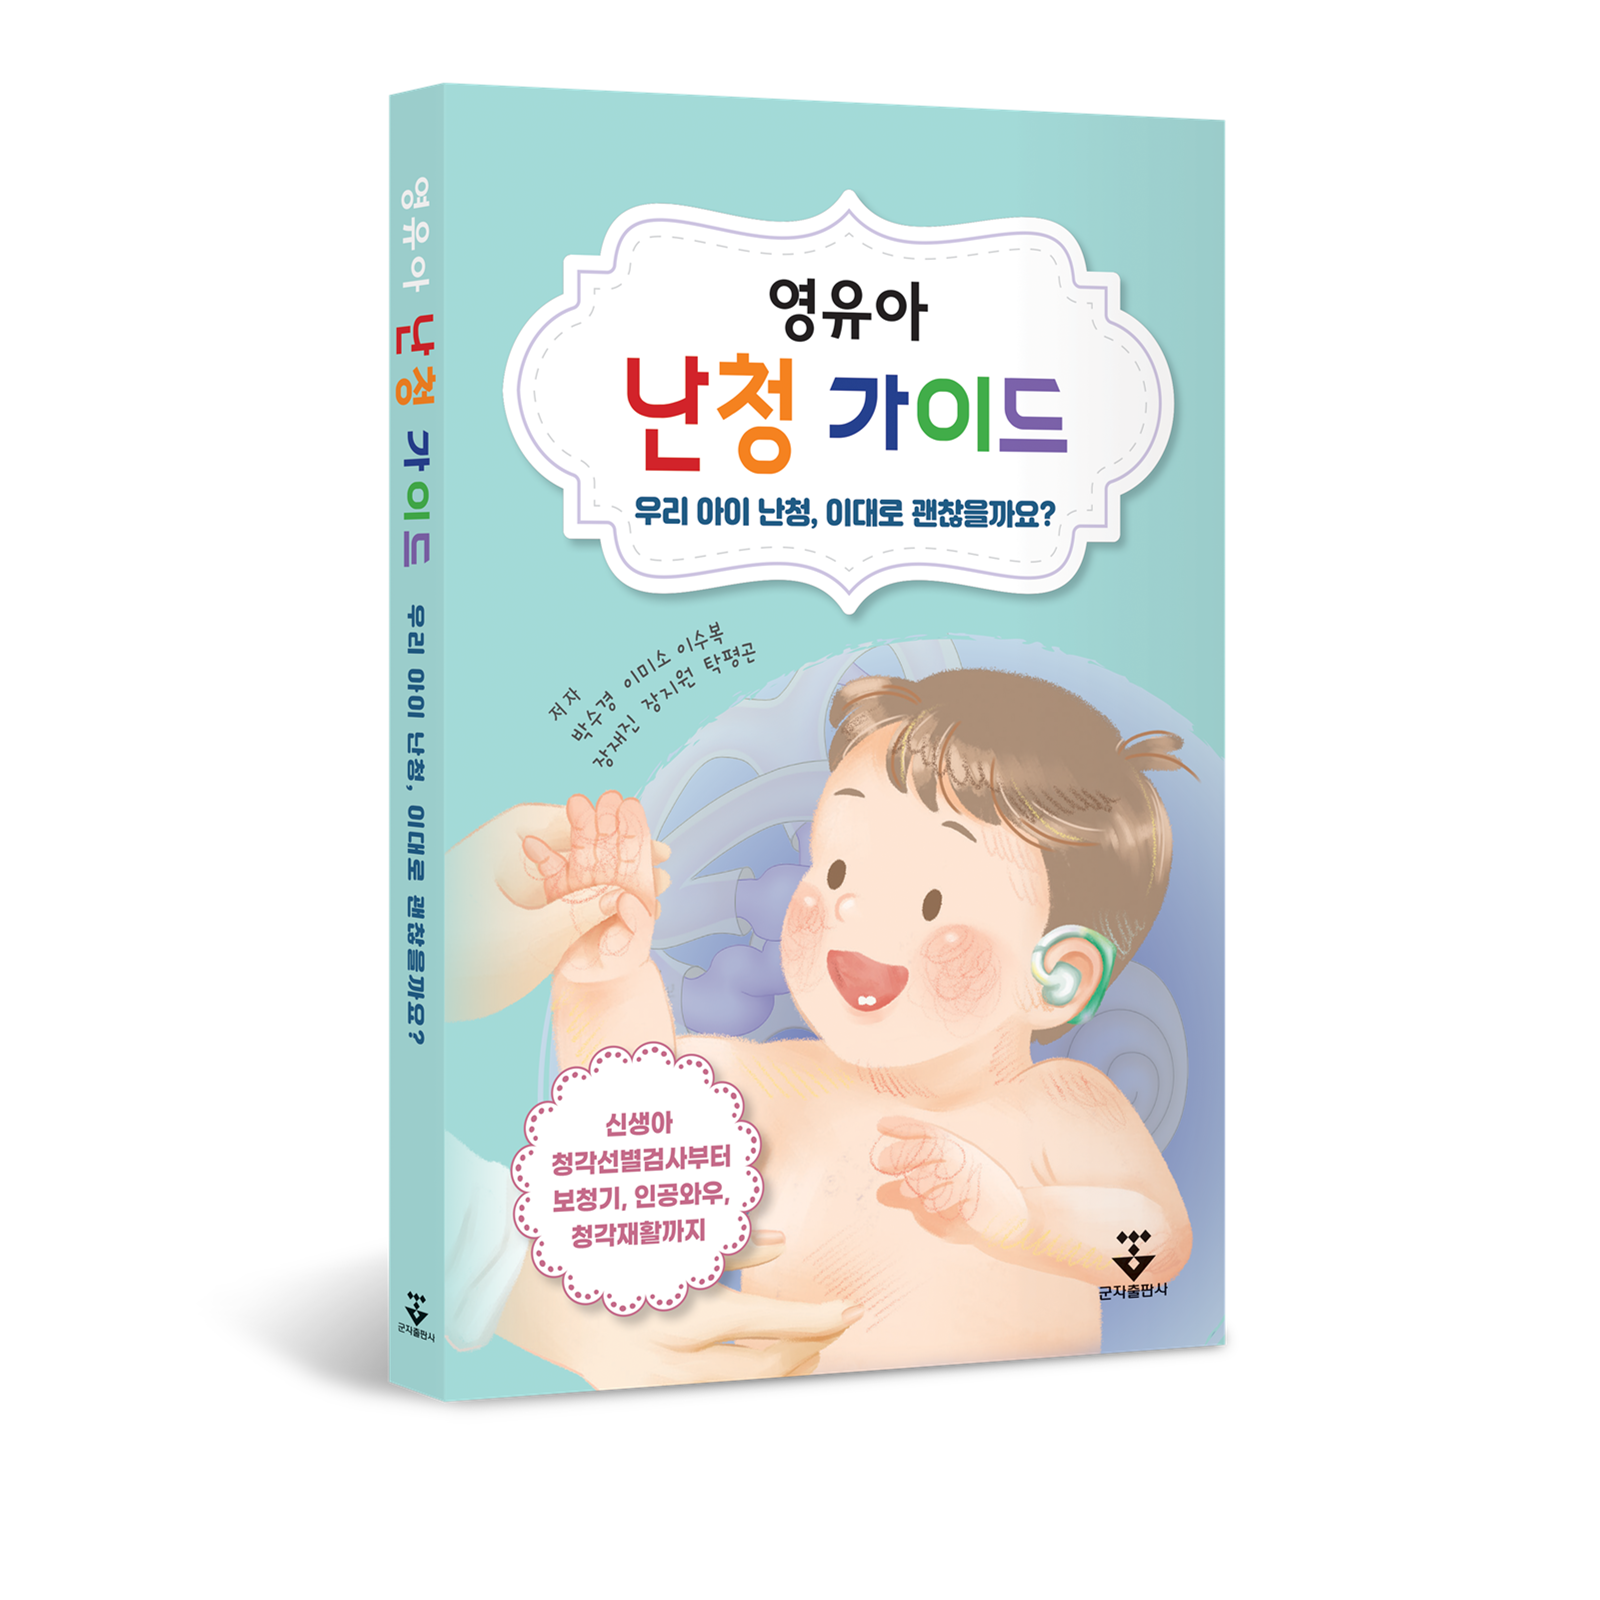 우송대 언어치료·청각재활학과, 난청 영유아를 위한 가이드북 발간